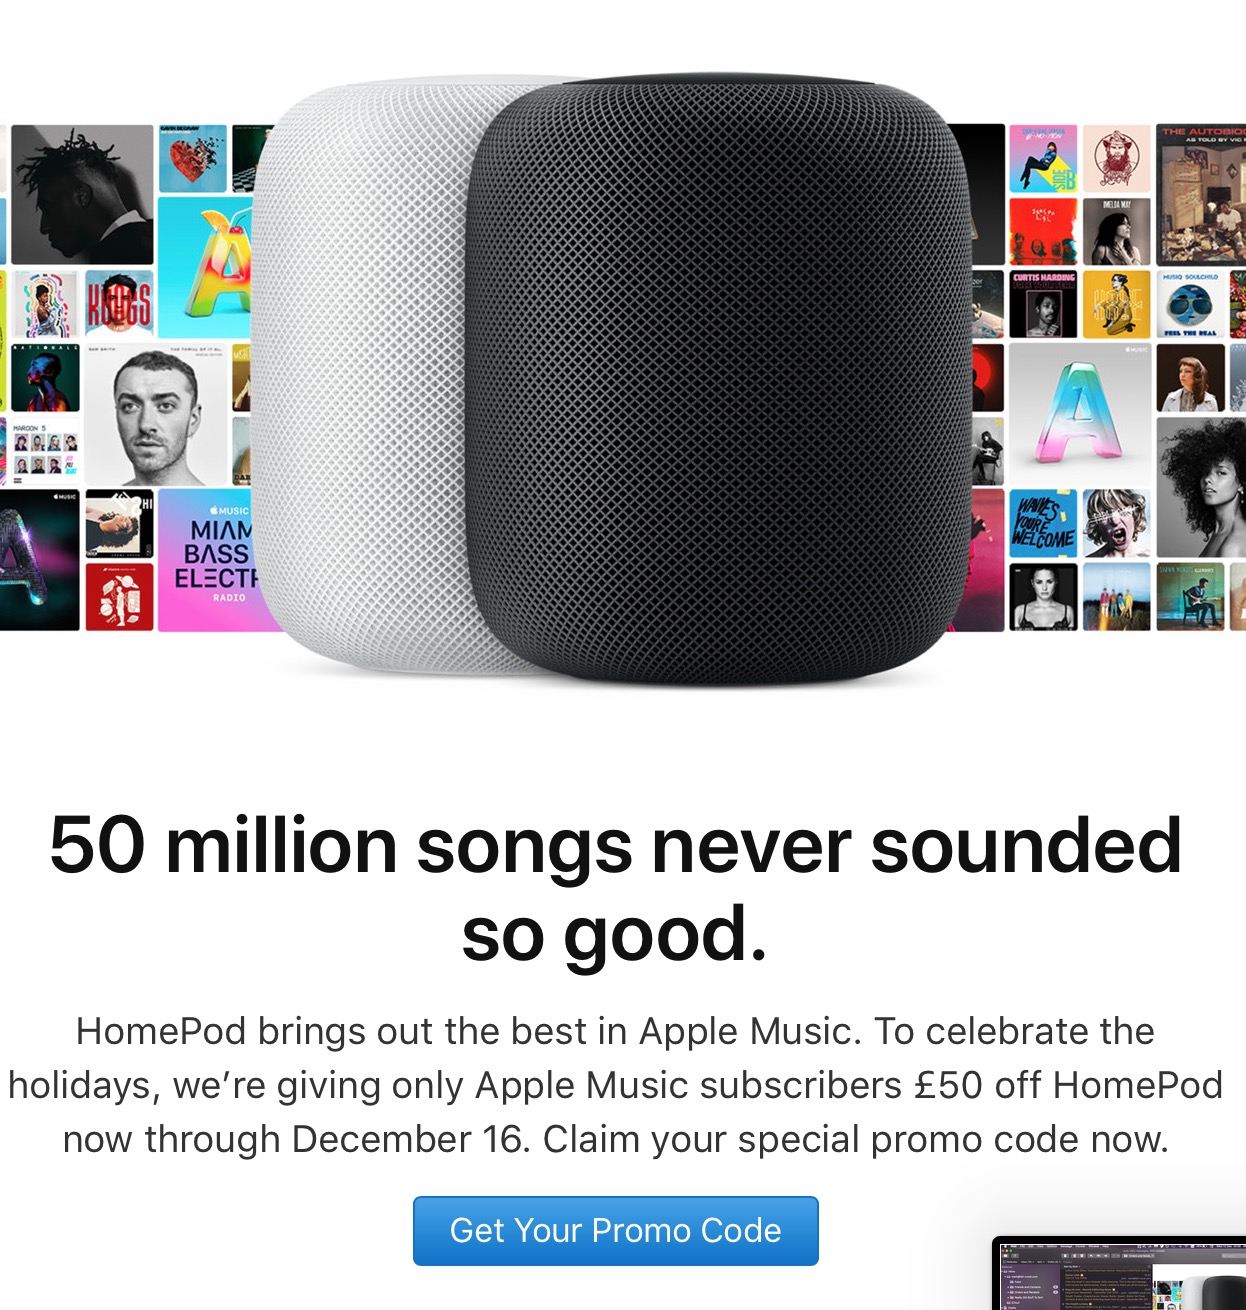 Promoção da Apple para o HomePod